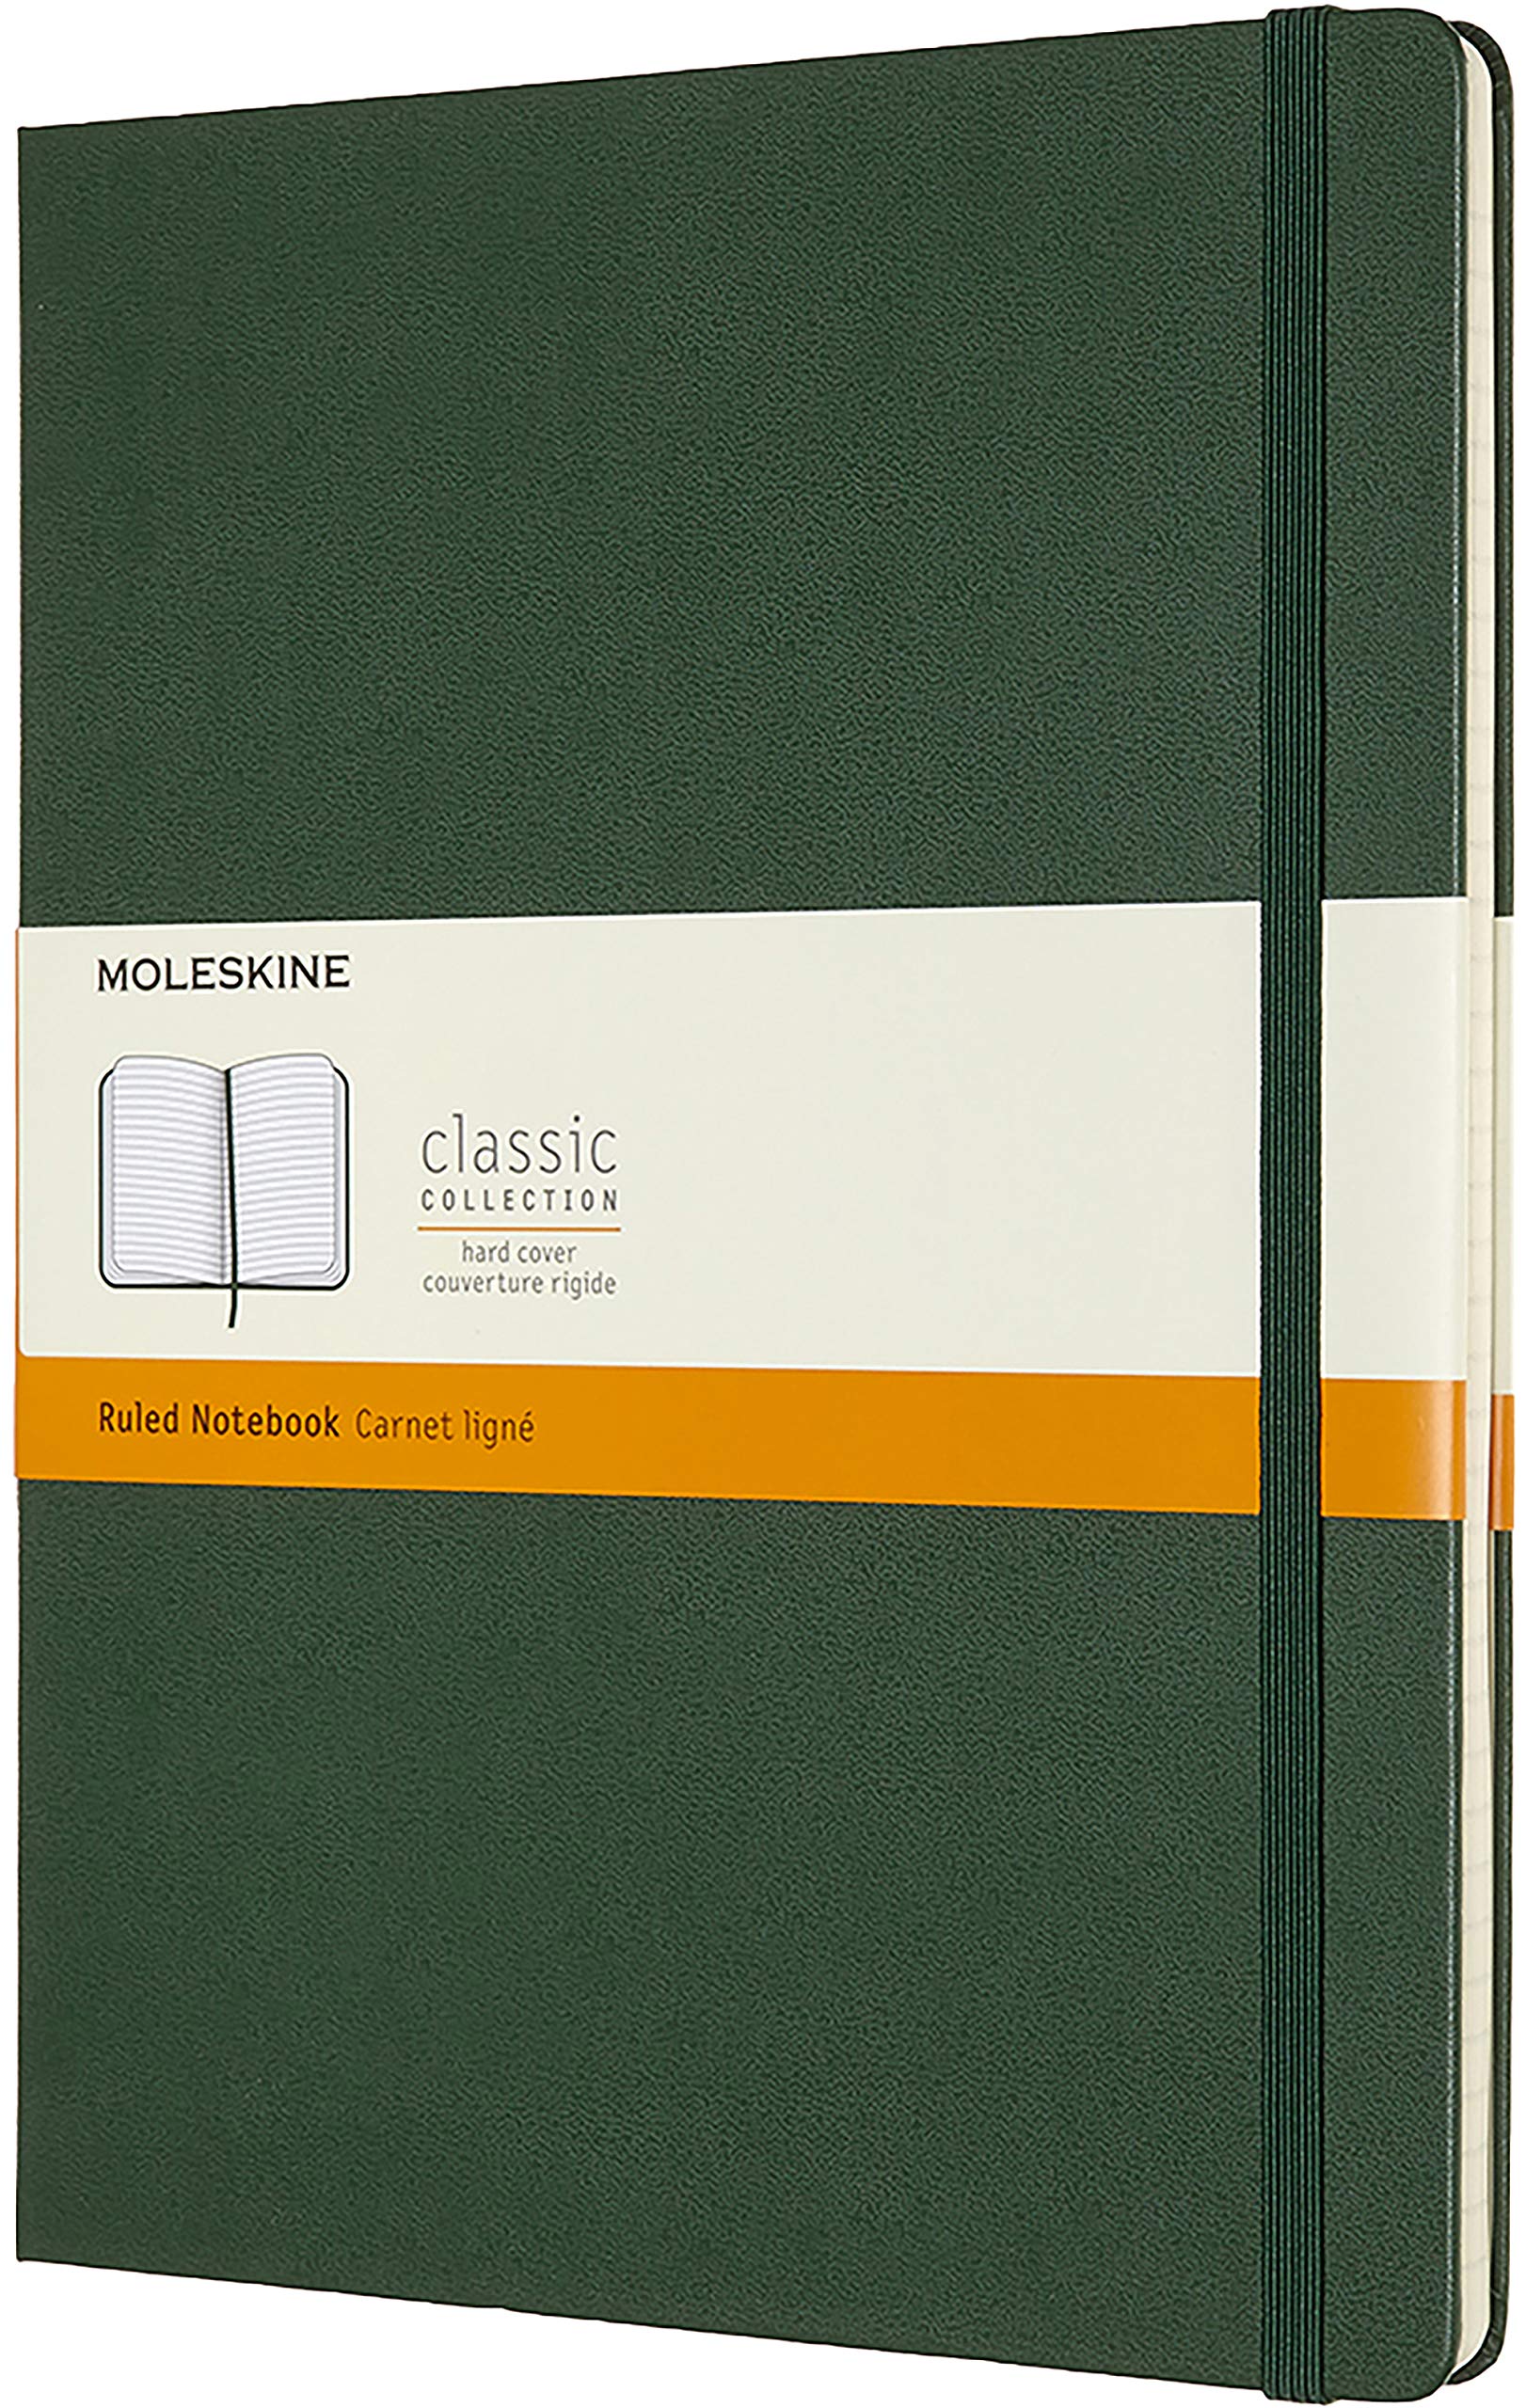 Carnet - Moleskine Classic - Extra Large, Ruled, Hard Cover - Myrtle Green | Moleskine image